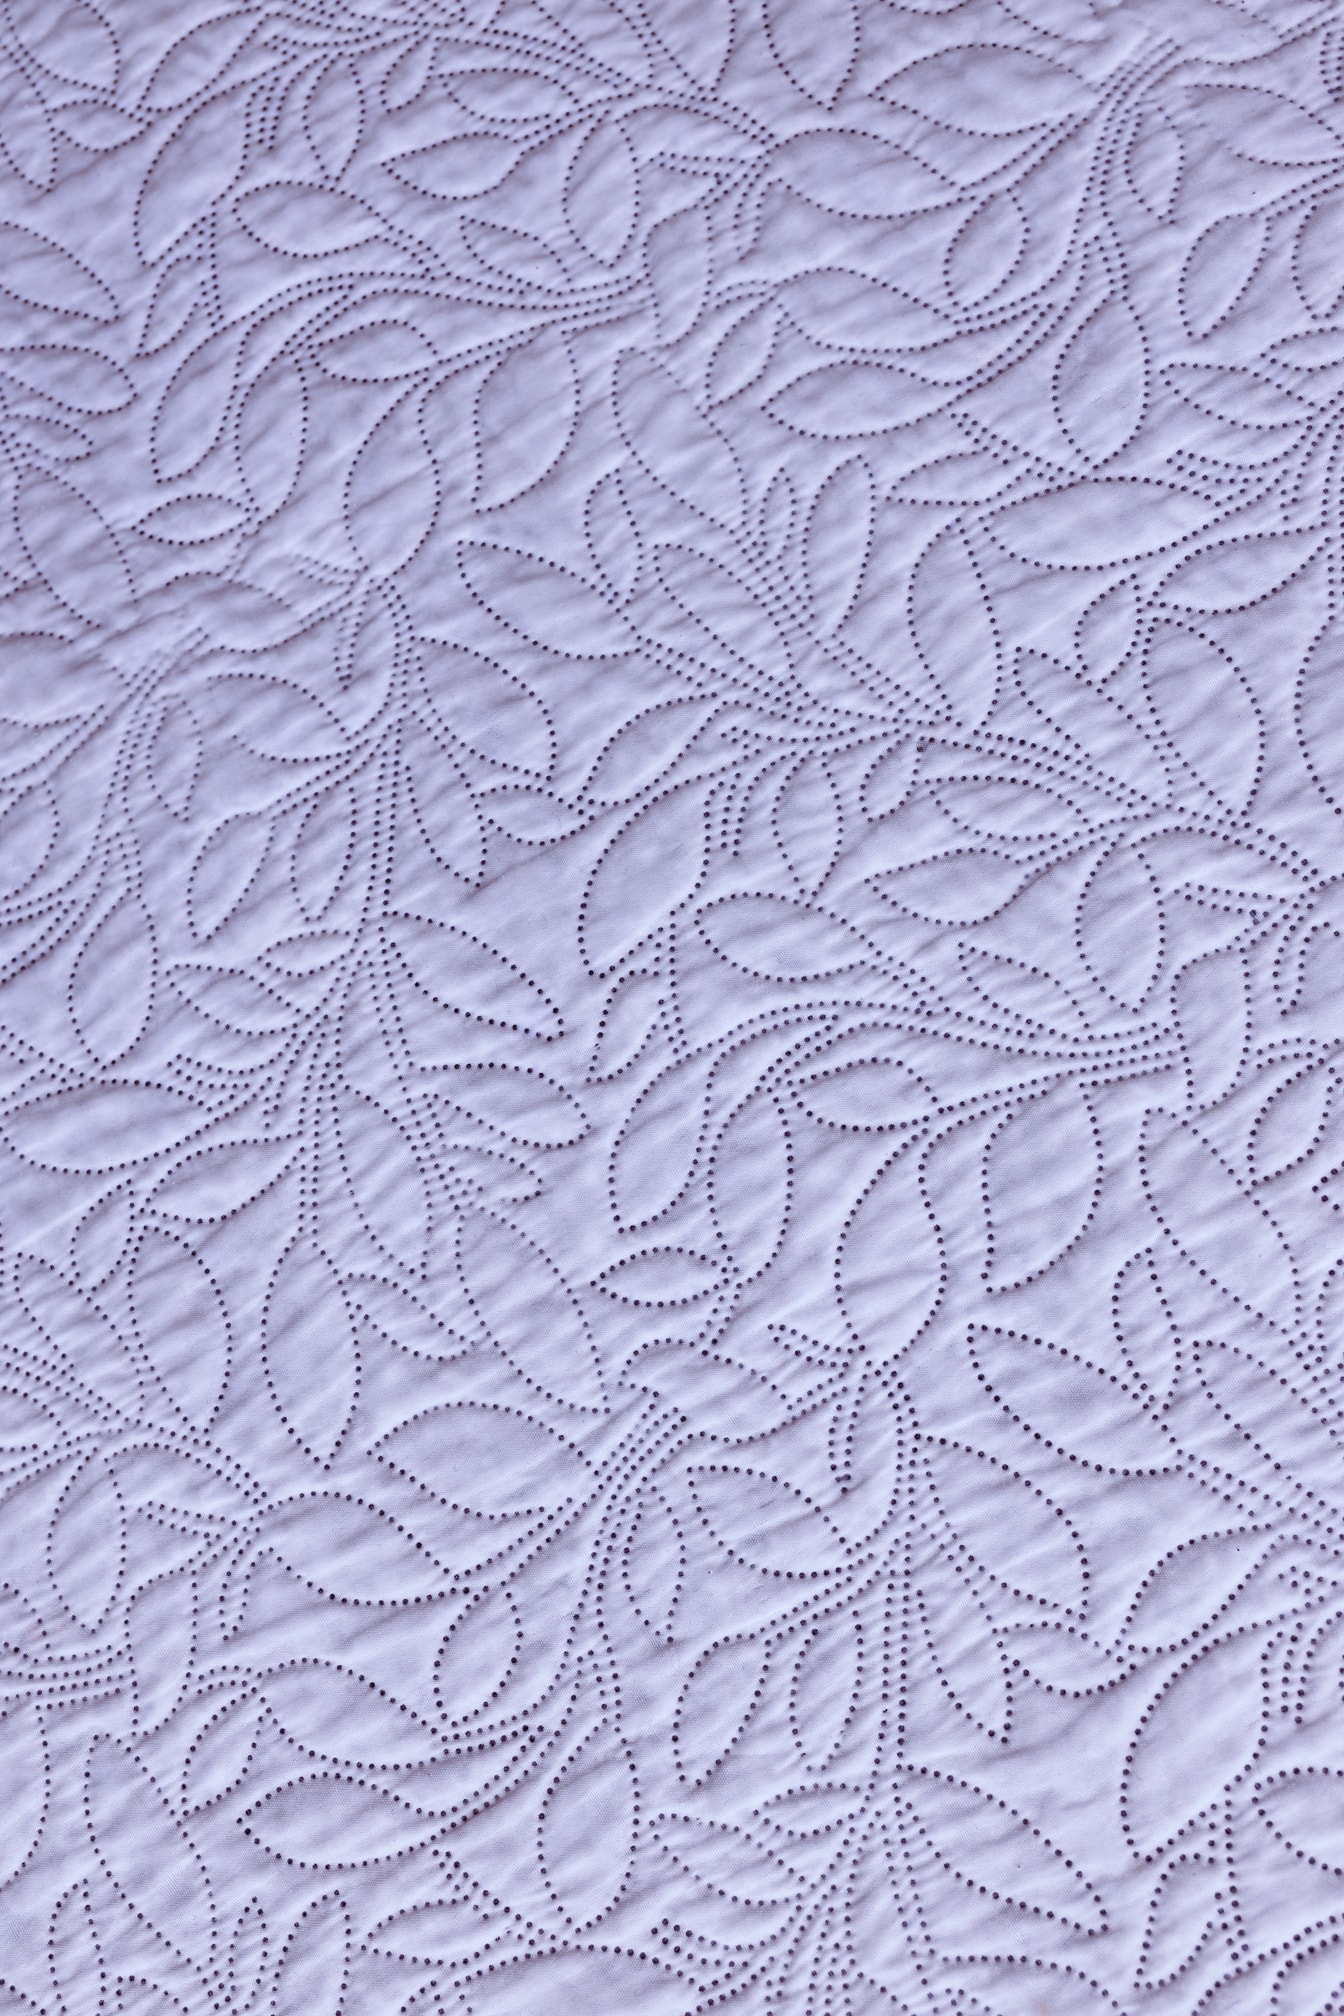 Weißer Baumwolldamaststoff mit ornamentalem Nähdekor